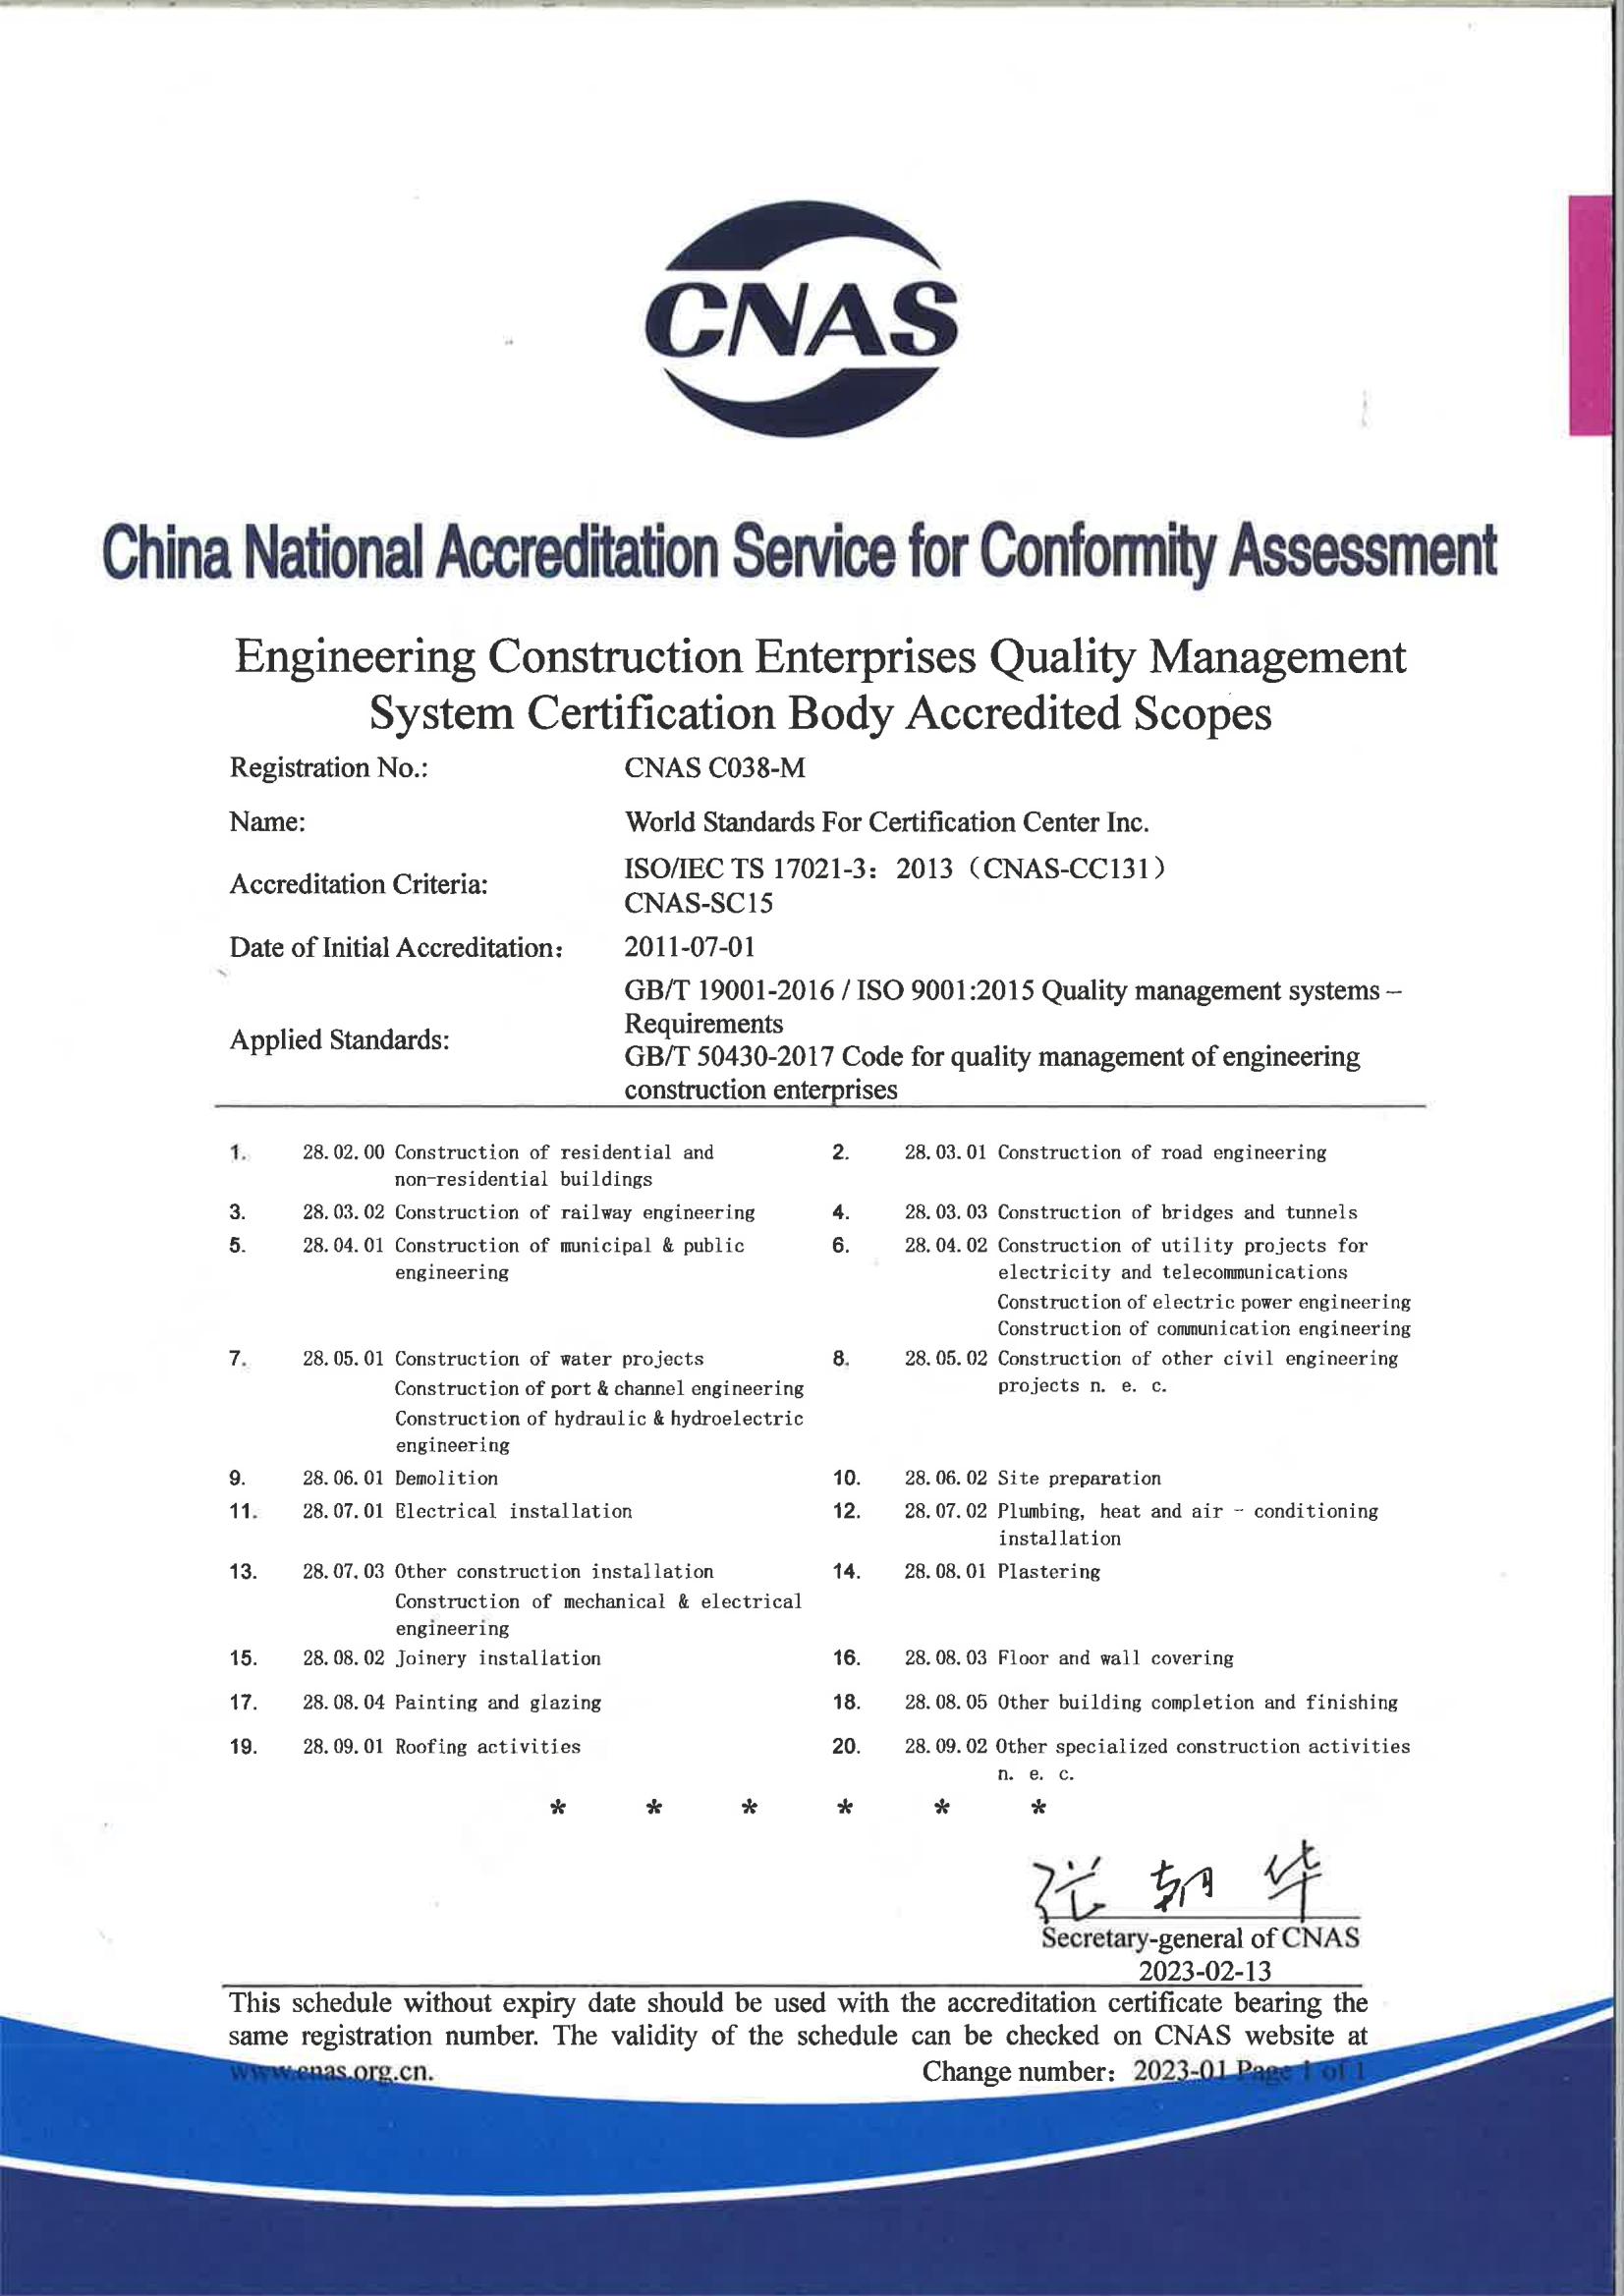 工程建设施工企业质量管理体系认证机构认可范围-英文版_00.jpg